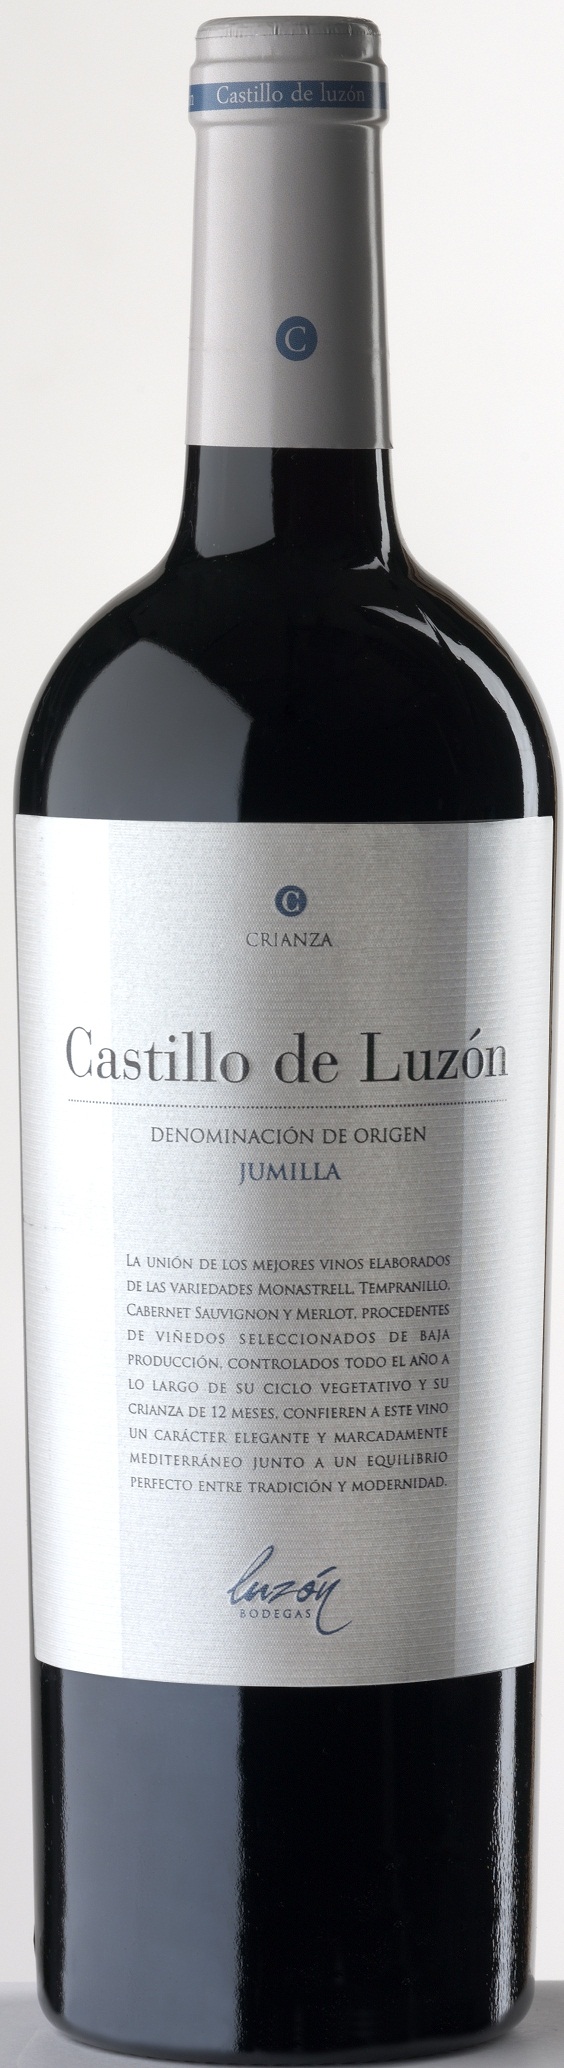 Imagen de la botella de Vino Castillo de Luzón